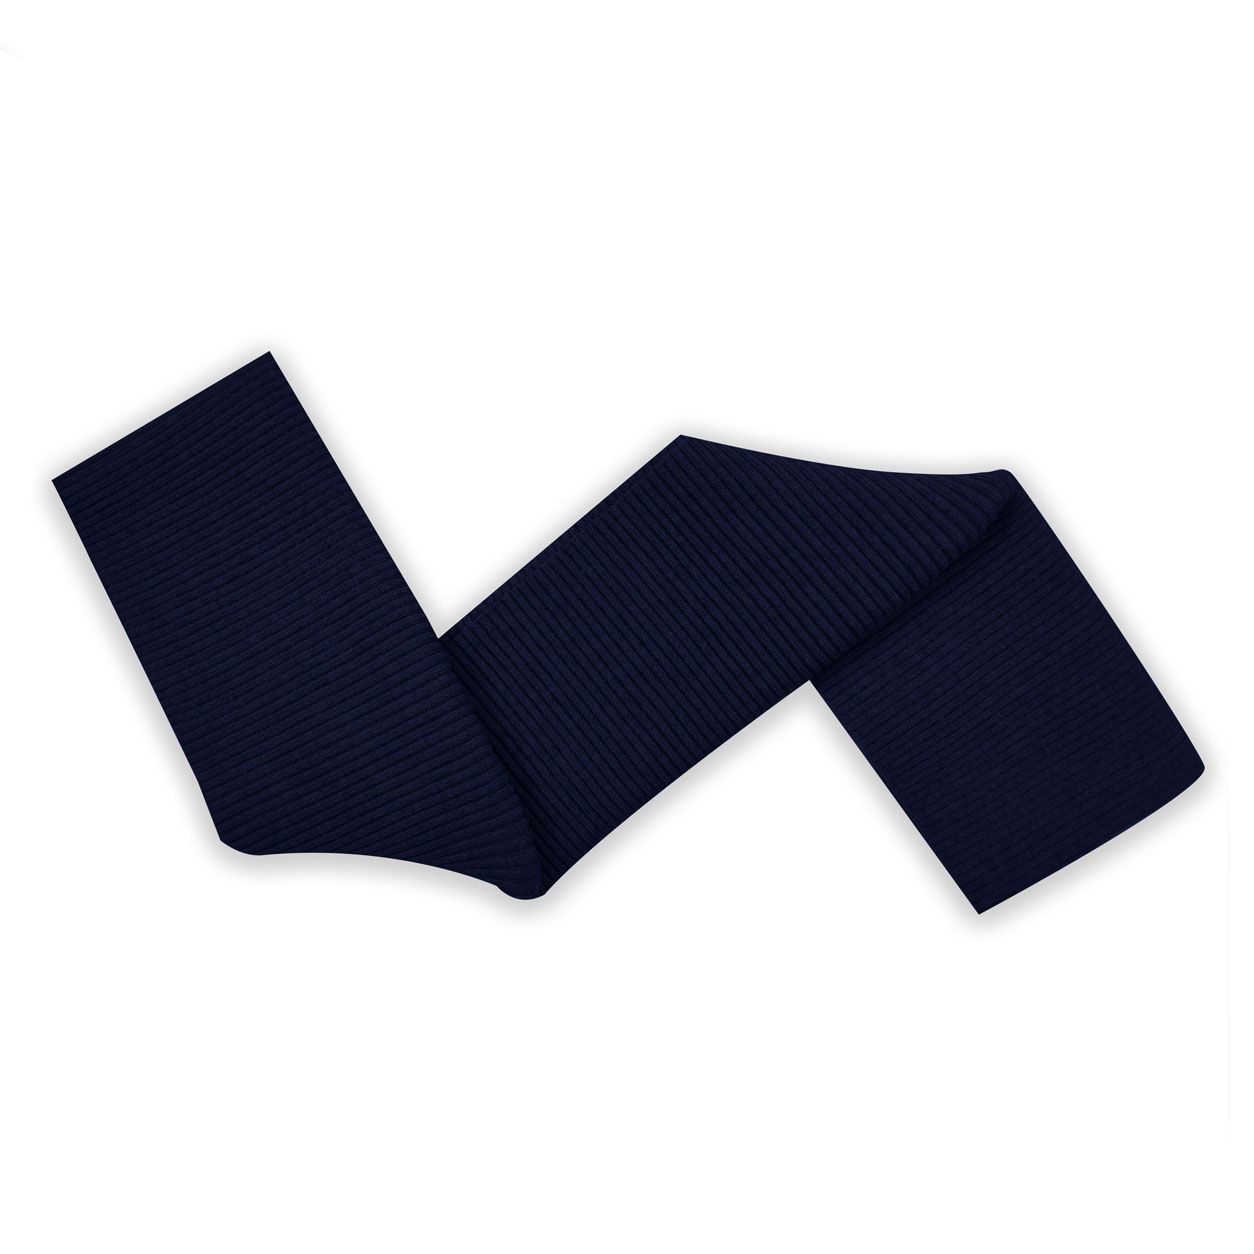 Bordo maglia doppio spessore per polsini girovita e gambali blu 1920x1920